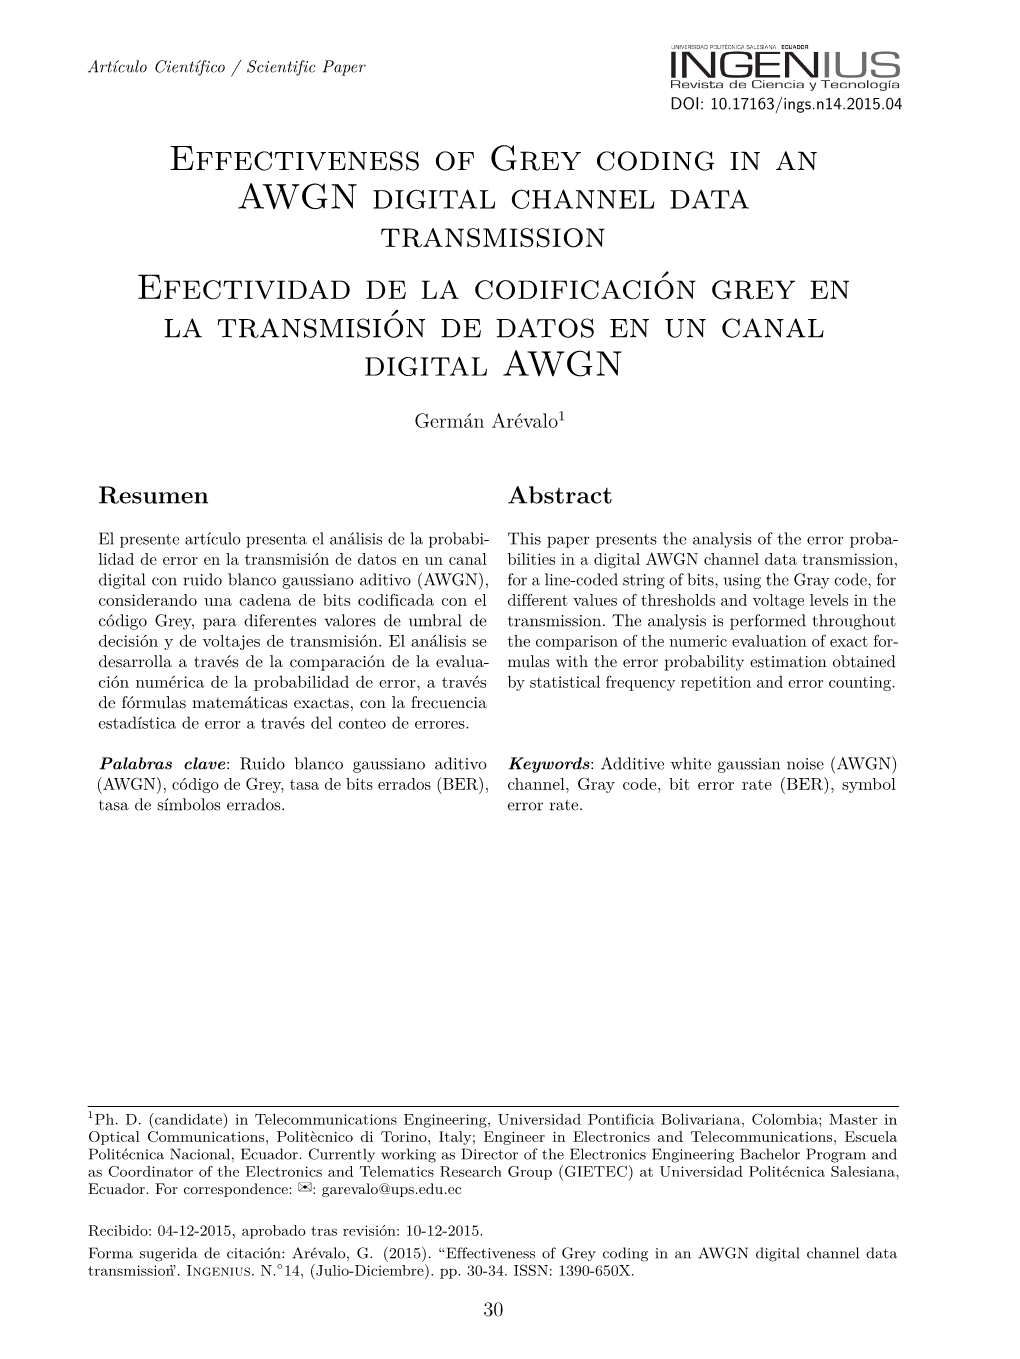 Effectiveness of Grey Coding in an AWGN Digital Channel Data Transmission Efectividad De La Codificación Grey En La Transmisión De Datos En Un Canal Digital AWGN